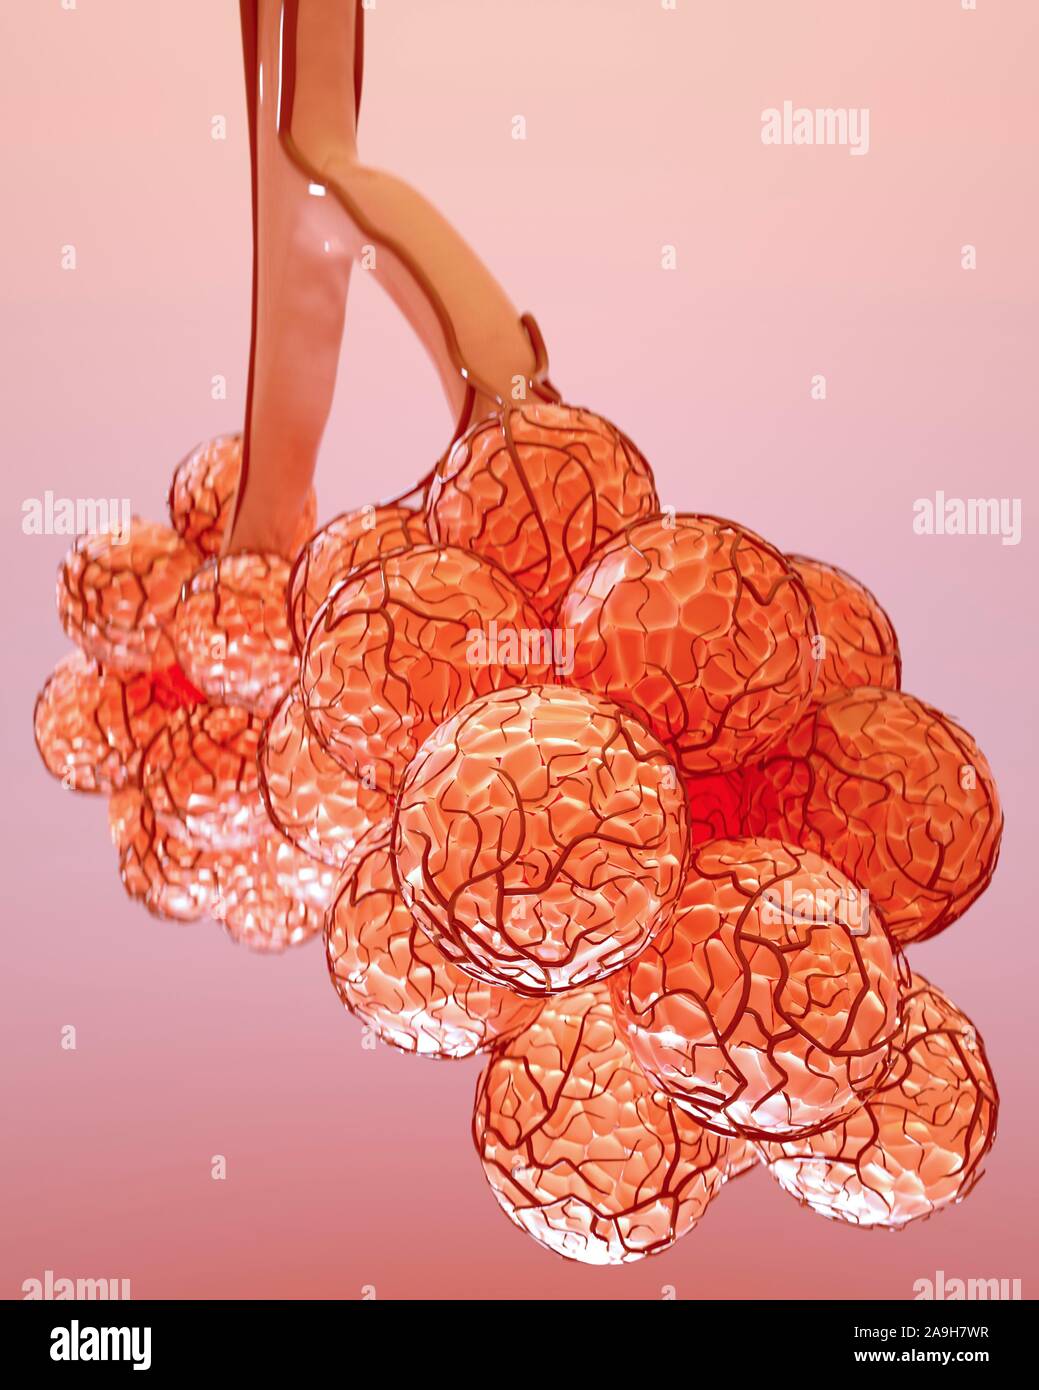 Alveoli, illustration Stock Photo